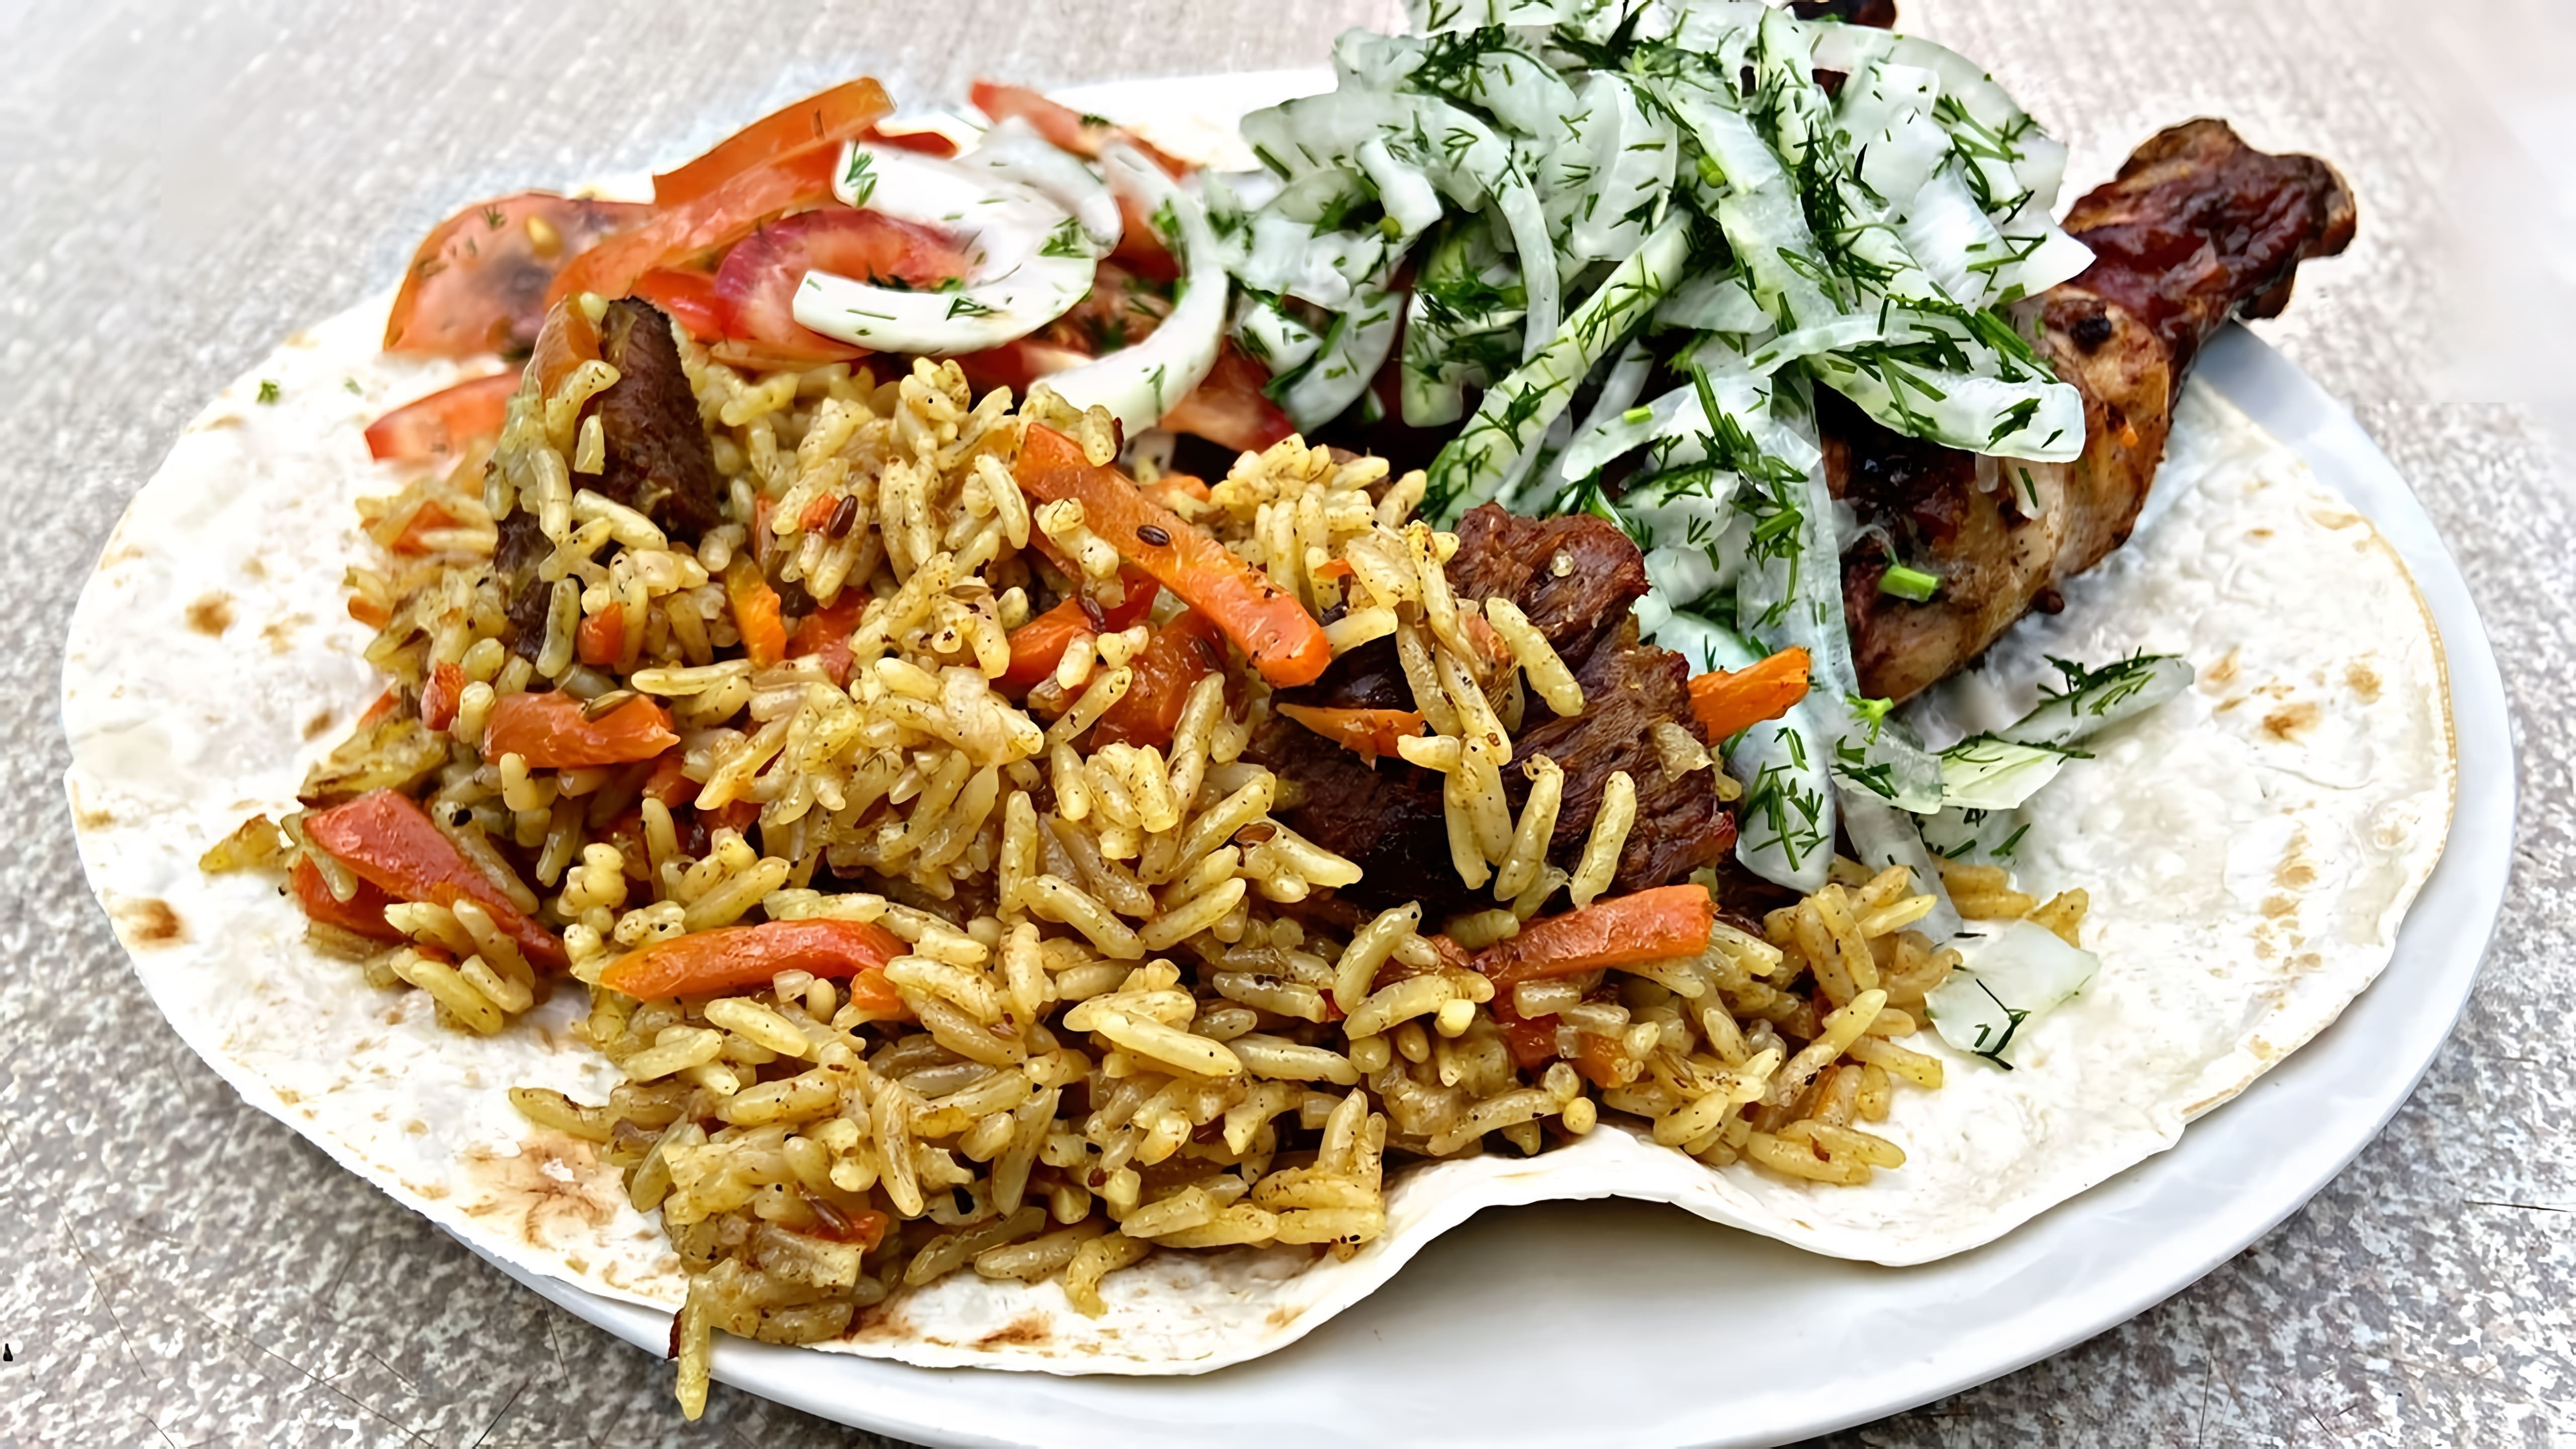 Узбекский плов - это традиционное блюдо узбекской кухни, которое готовится из риса, мяса, моркови и специй